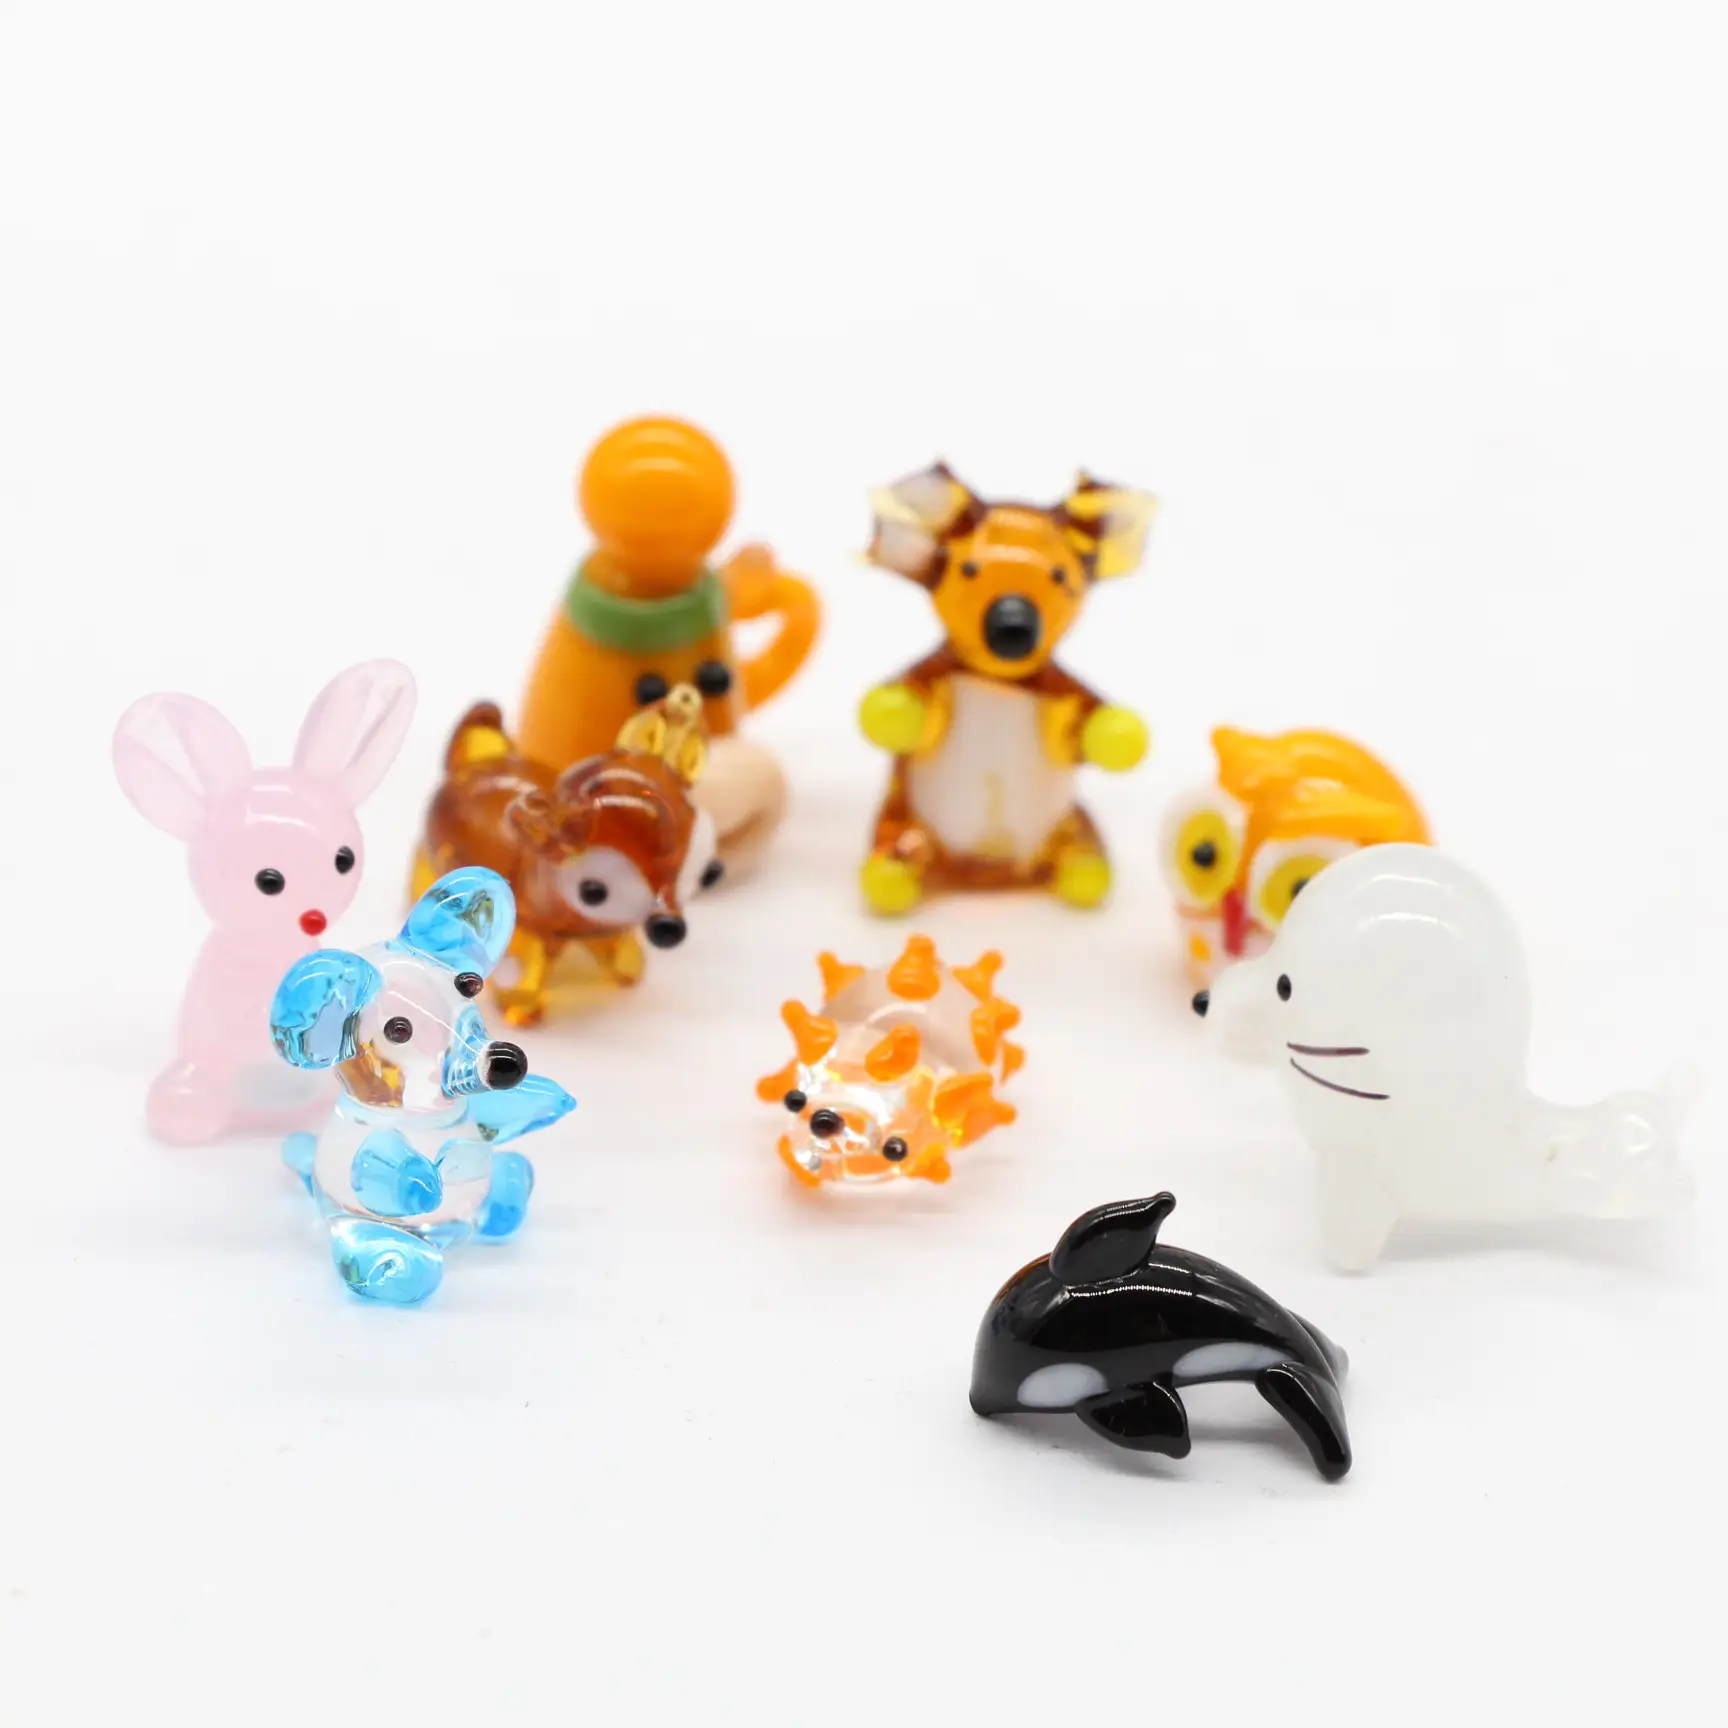 Mini figuritas de cristal en miniatura pequeñas hechas a mano, decoración artística para el hogar de animales lindos